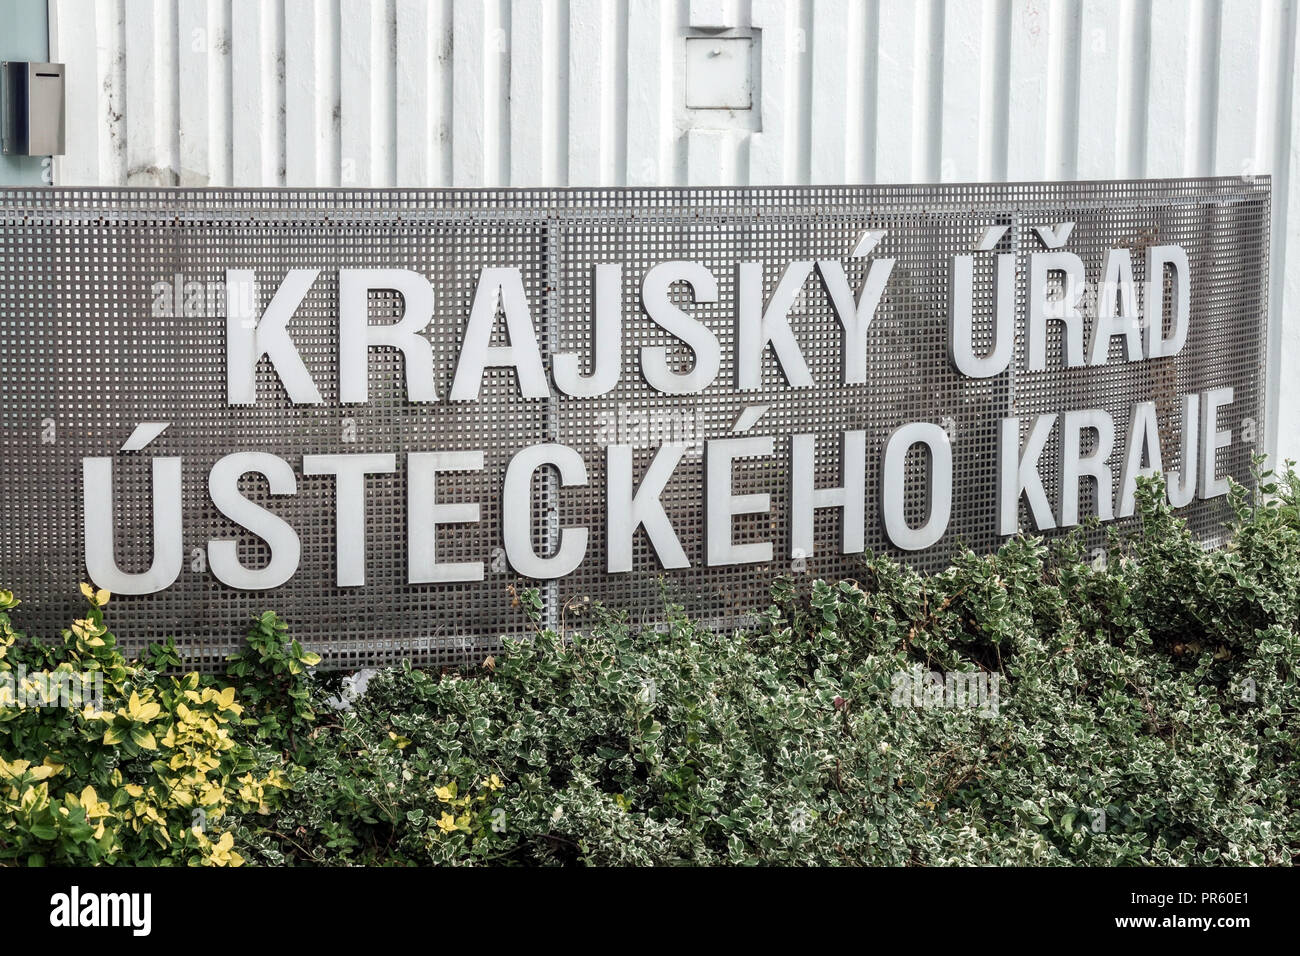 Regional Authority of the Usti Region, Krajsky urad Usti Nad Labem, Czech Republic Stock Photo